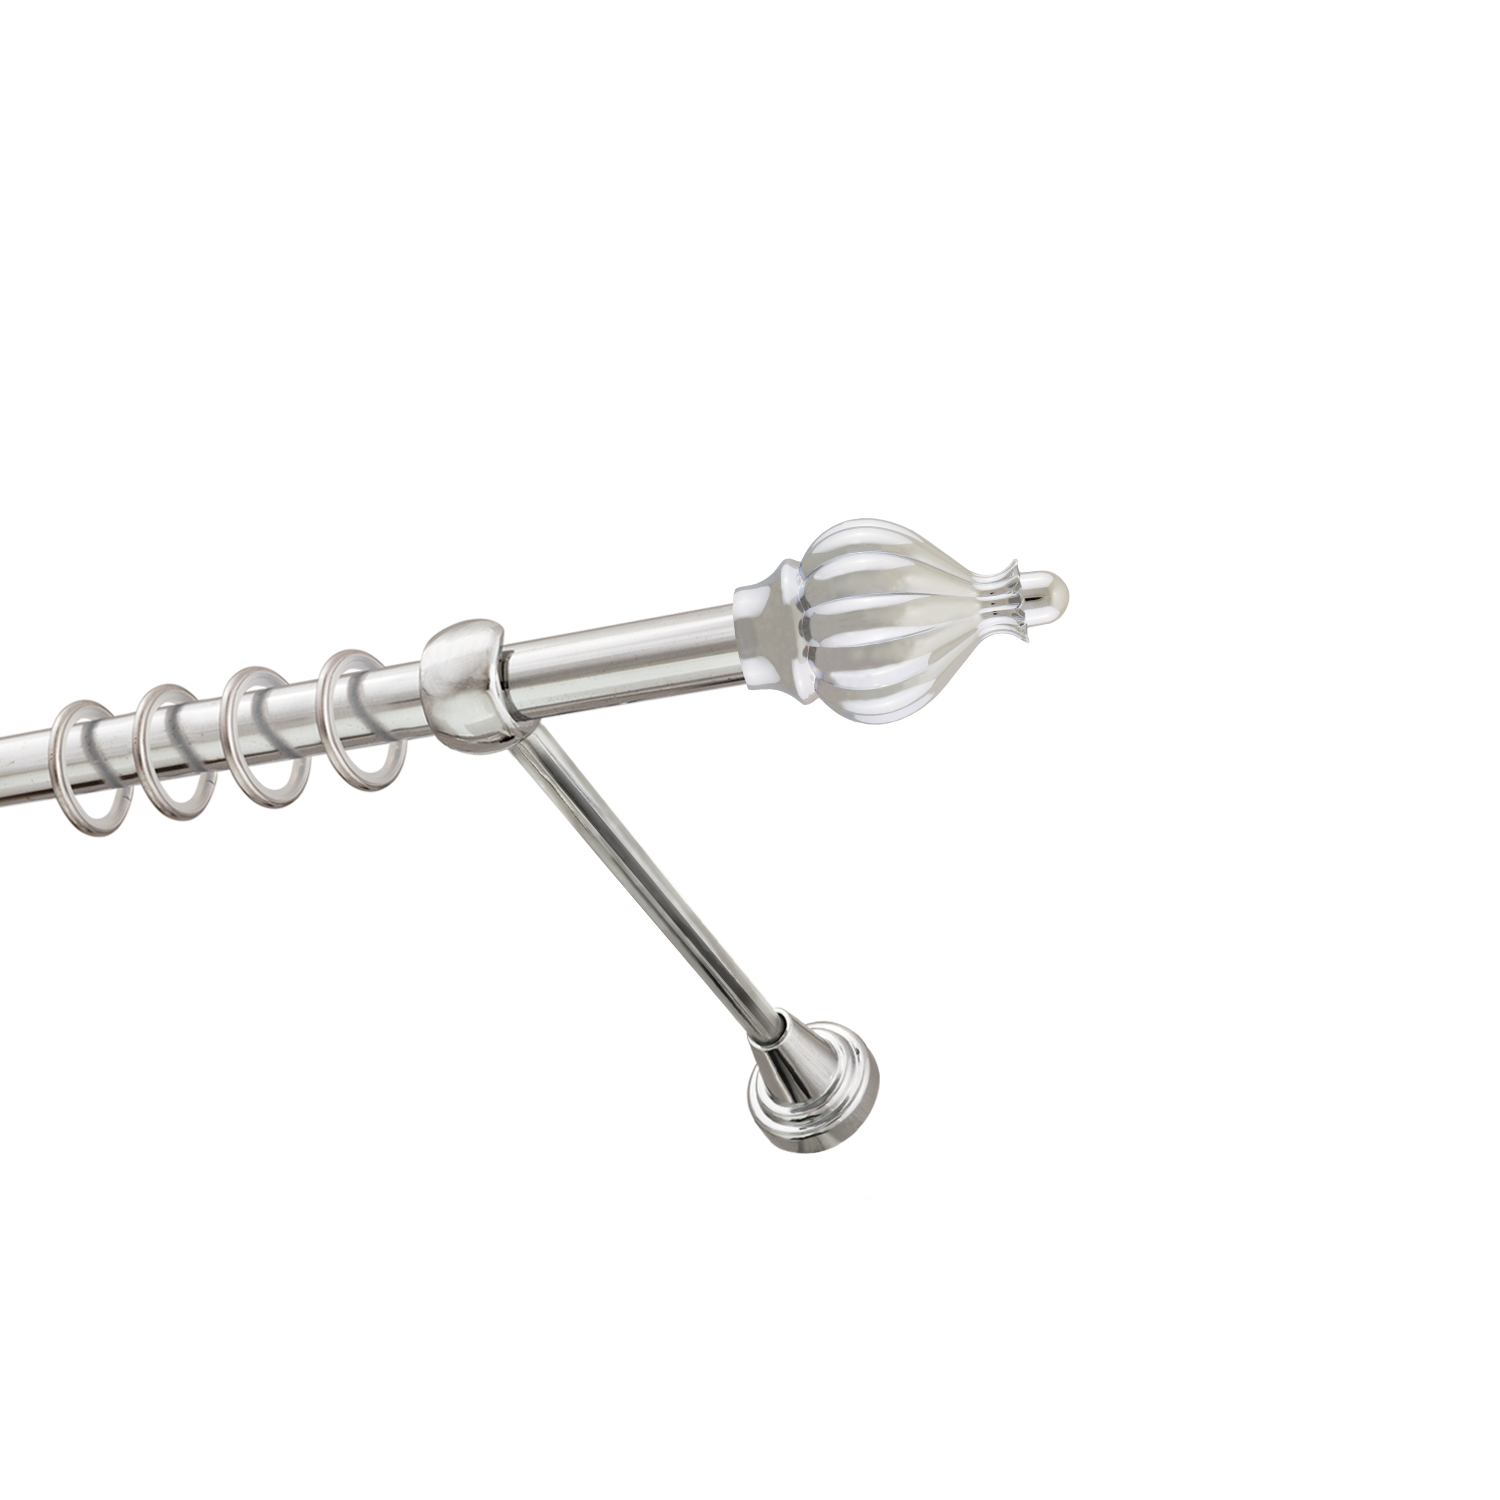 Металлический карниз для штор Афродита, однорядный 16 мм, серебро, гладкая штанга, длина 180 см - фото Wikidecor.ru